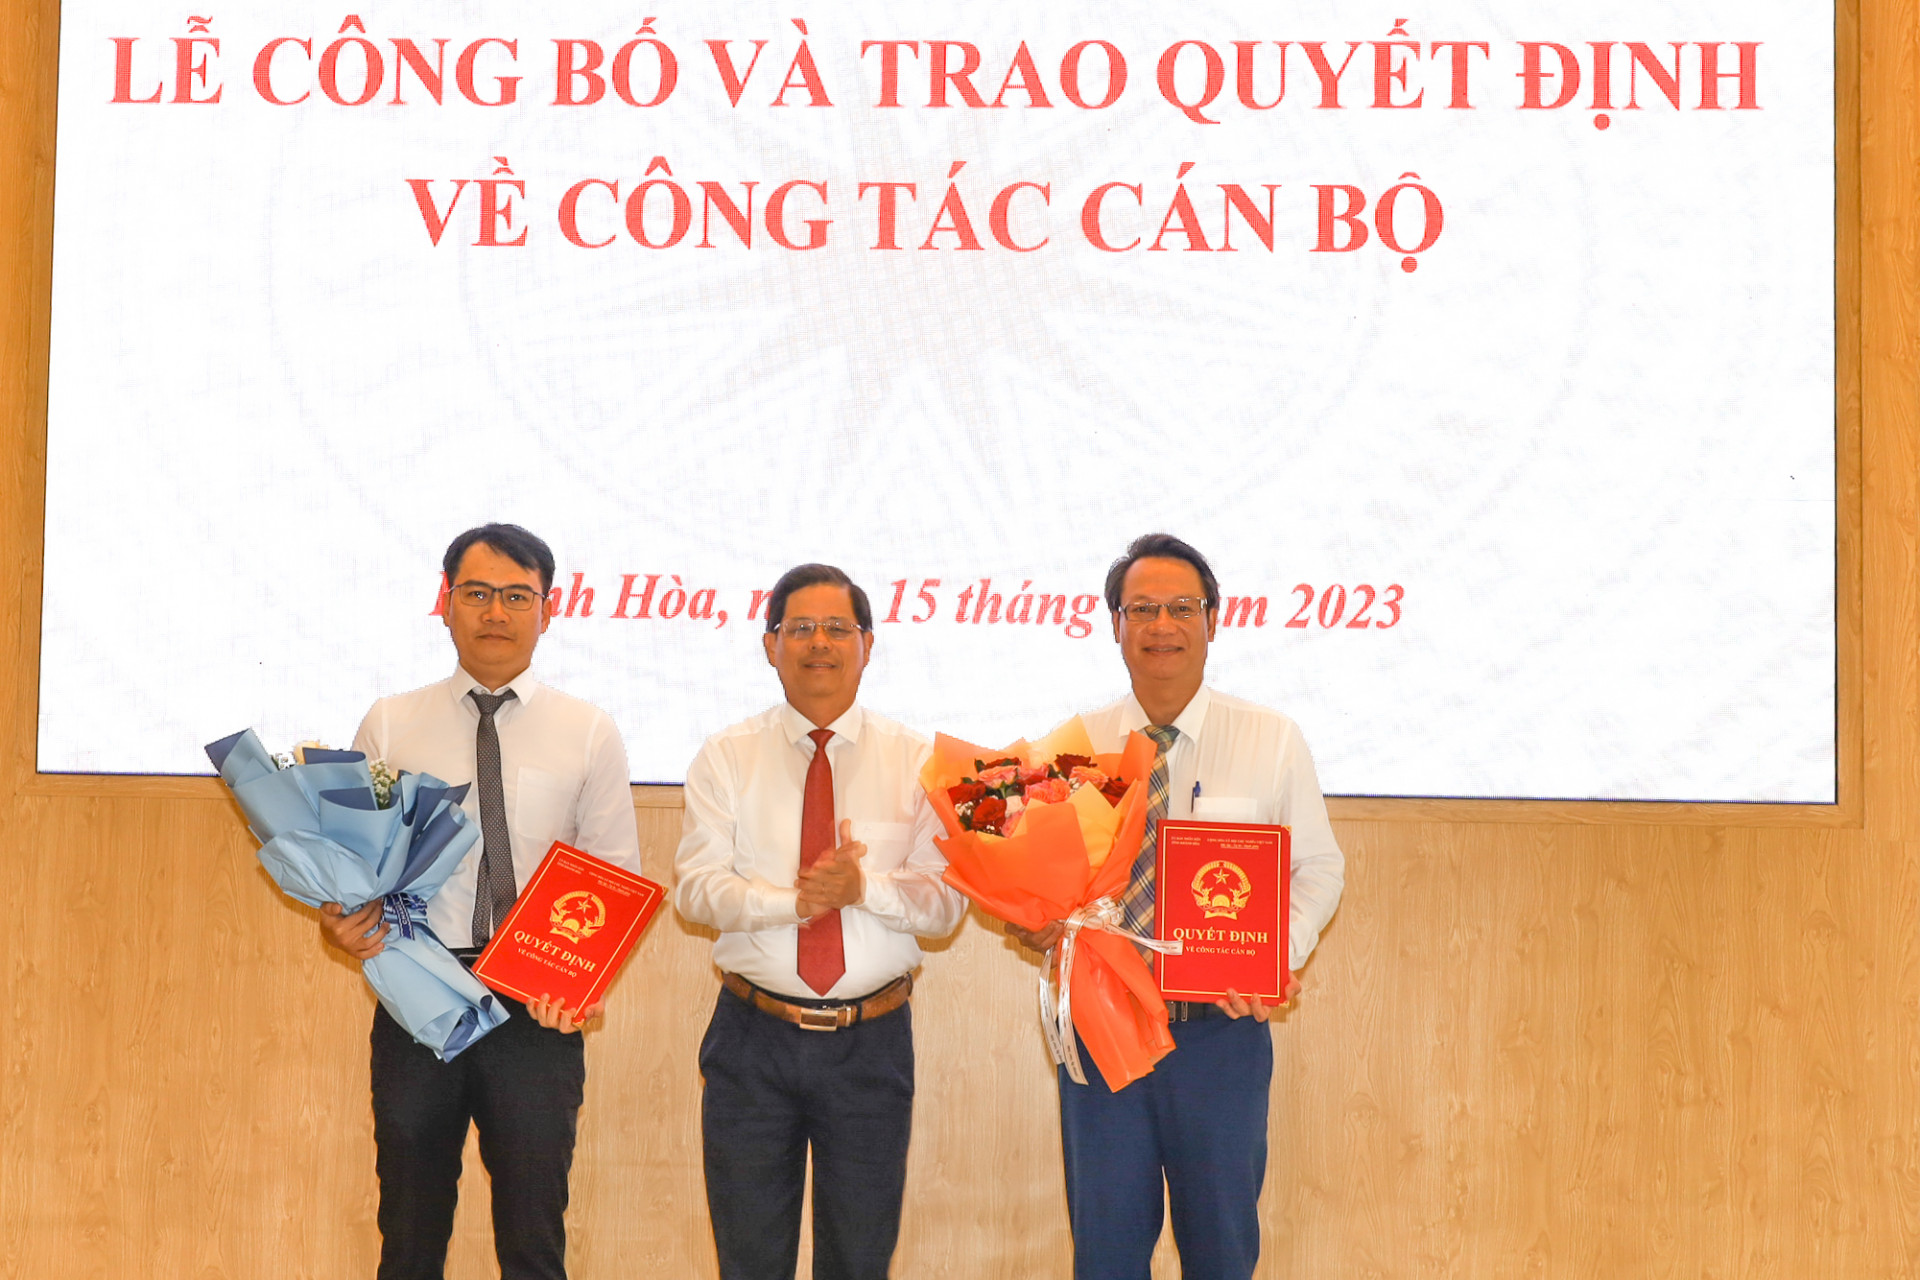 Đồng chí Nguyễn Tấn Tuân trao quyết định bổ nhiệm đối với hai đồng chí Mai Hữu Bảo Huy và Nguyễn Xuân Hải.